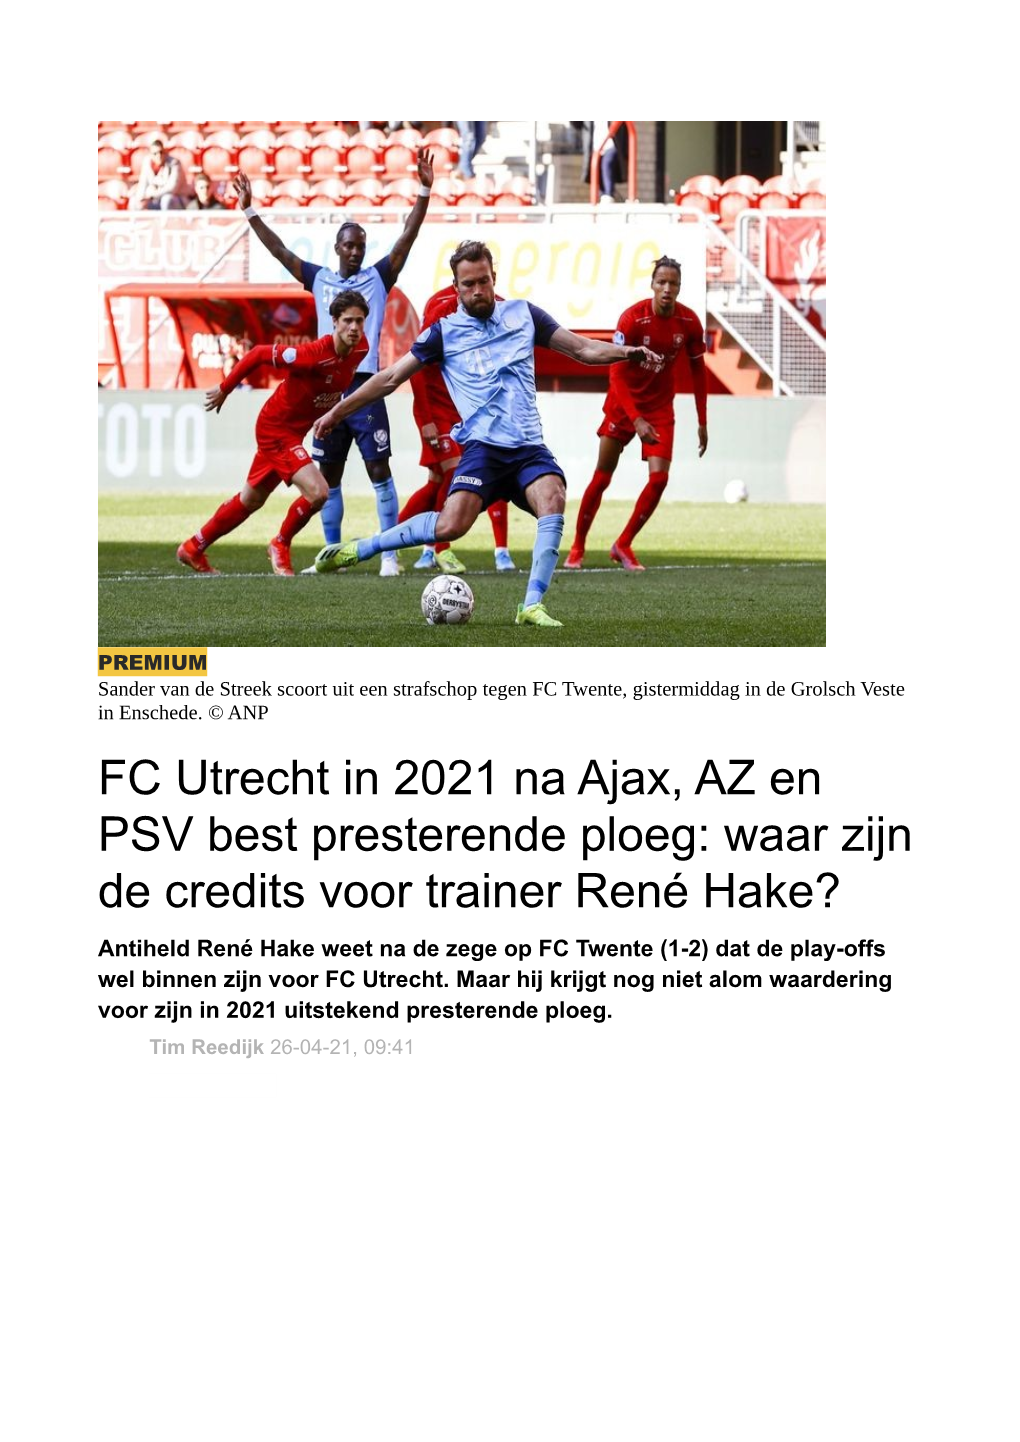 FC Utrecht in 2021 Na Ajax, AZ En PSV Best